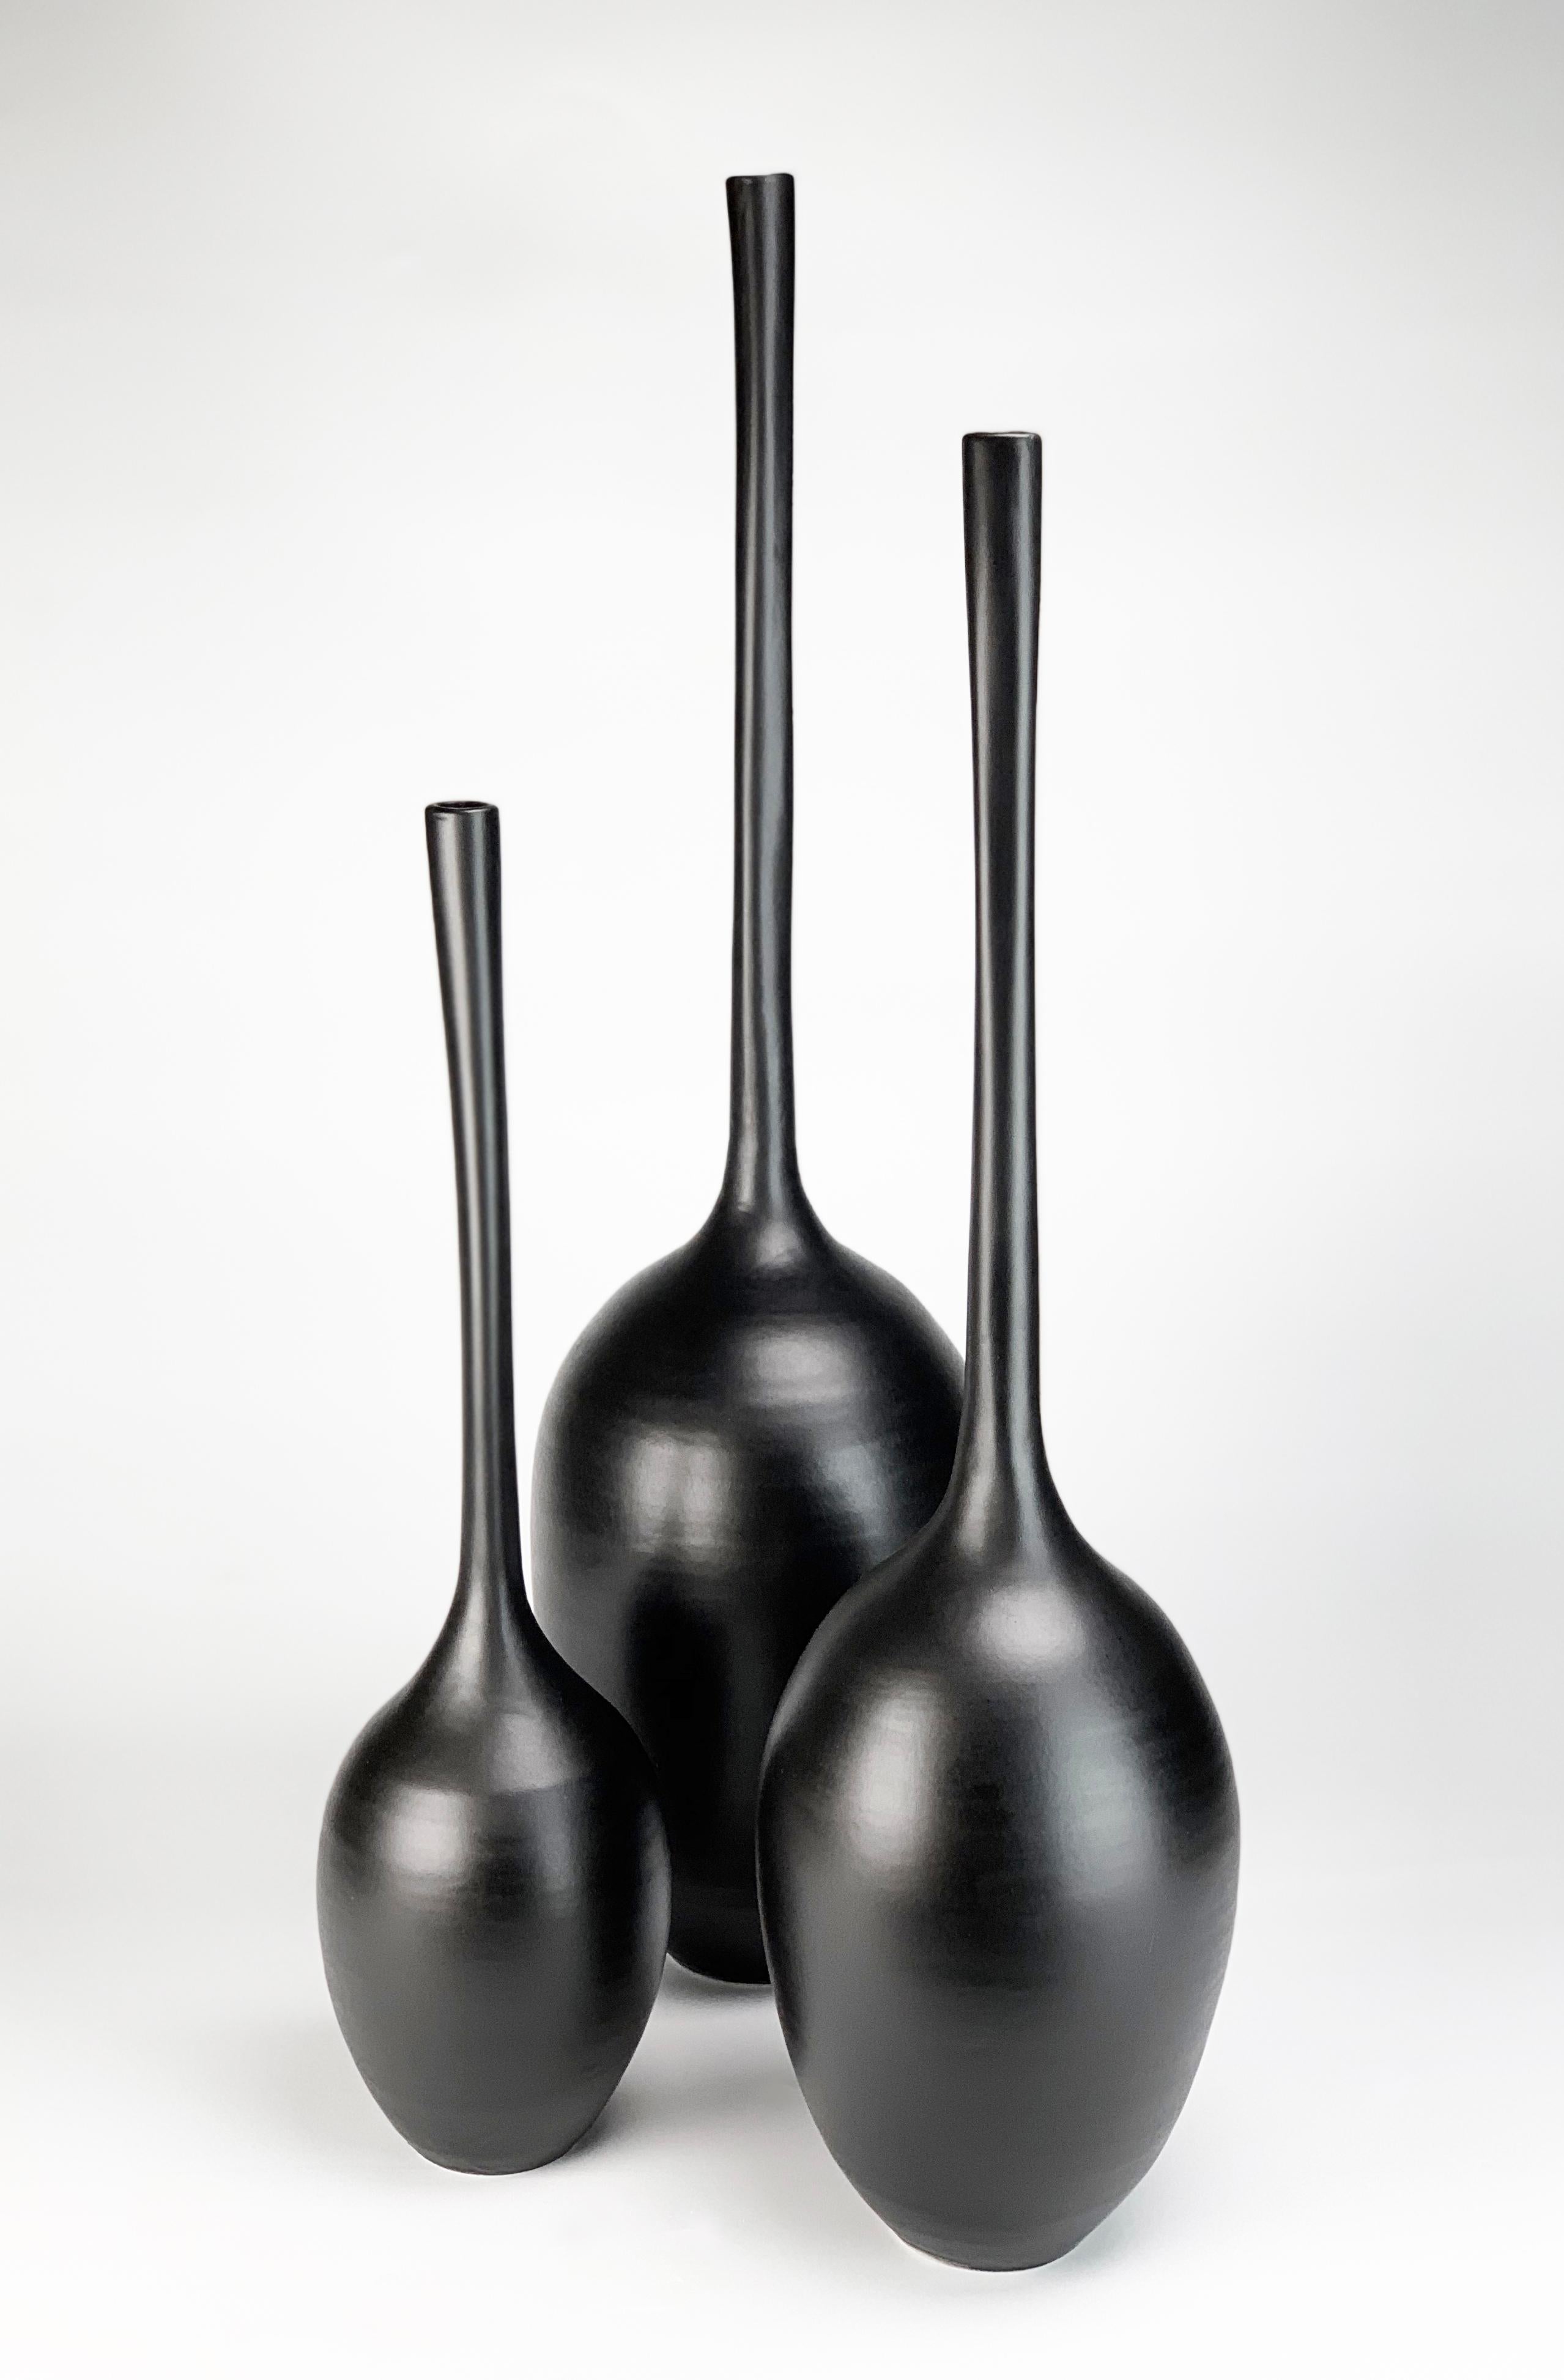 Satz von 3 schwarzen Kürbisskulpturen aus Keramik von Michael Boroniec - Keramik, Glasur  

Abmessungen: (ca.)
Links. 21,5 x 6 x 6 Zoll 
Zentrum. 24,5 x 6,5 x 6,5 Zoll 
Rechts: 23 x 5,25 x 5,25 Zoll  

Die 